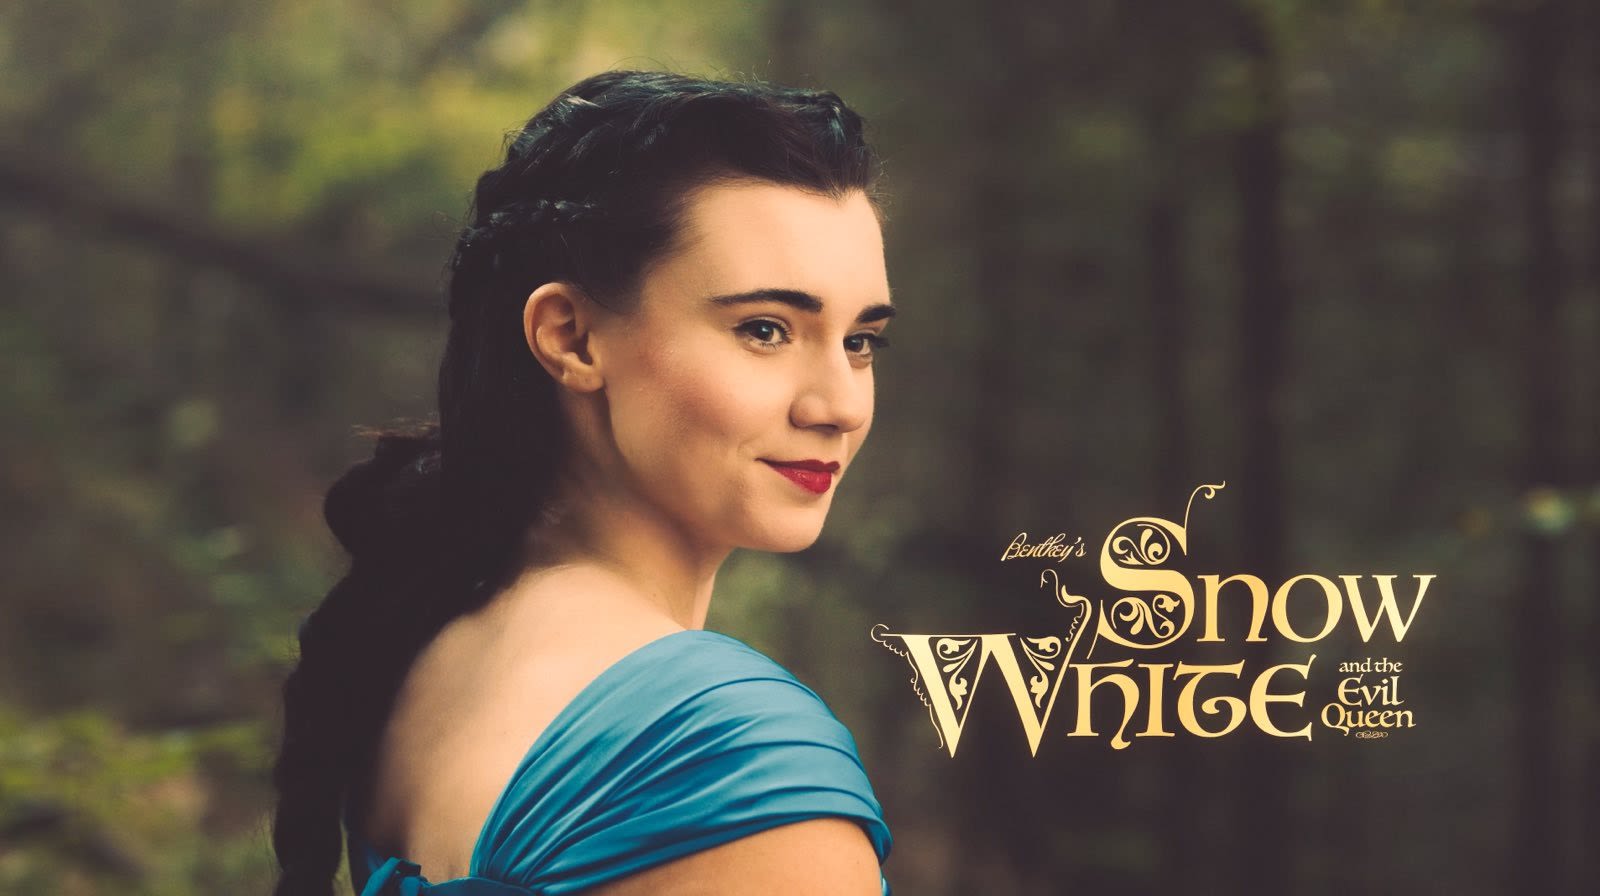 Actress, podcaster Brett Cooper spills details of new non-woke Snow White